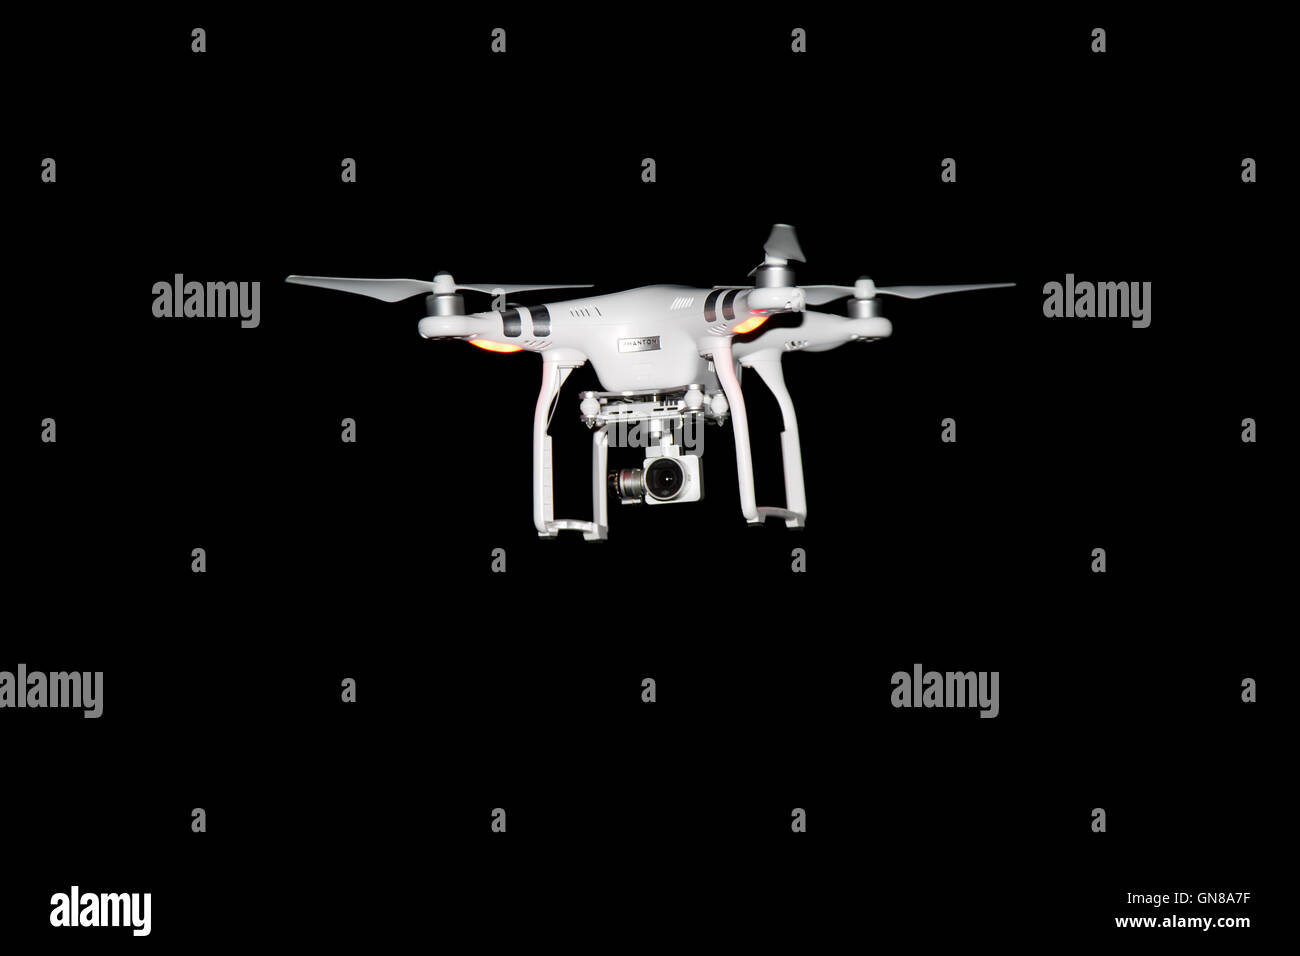 Drone at night immagini e fotografie stock ad alta risoluzione - Alamy